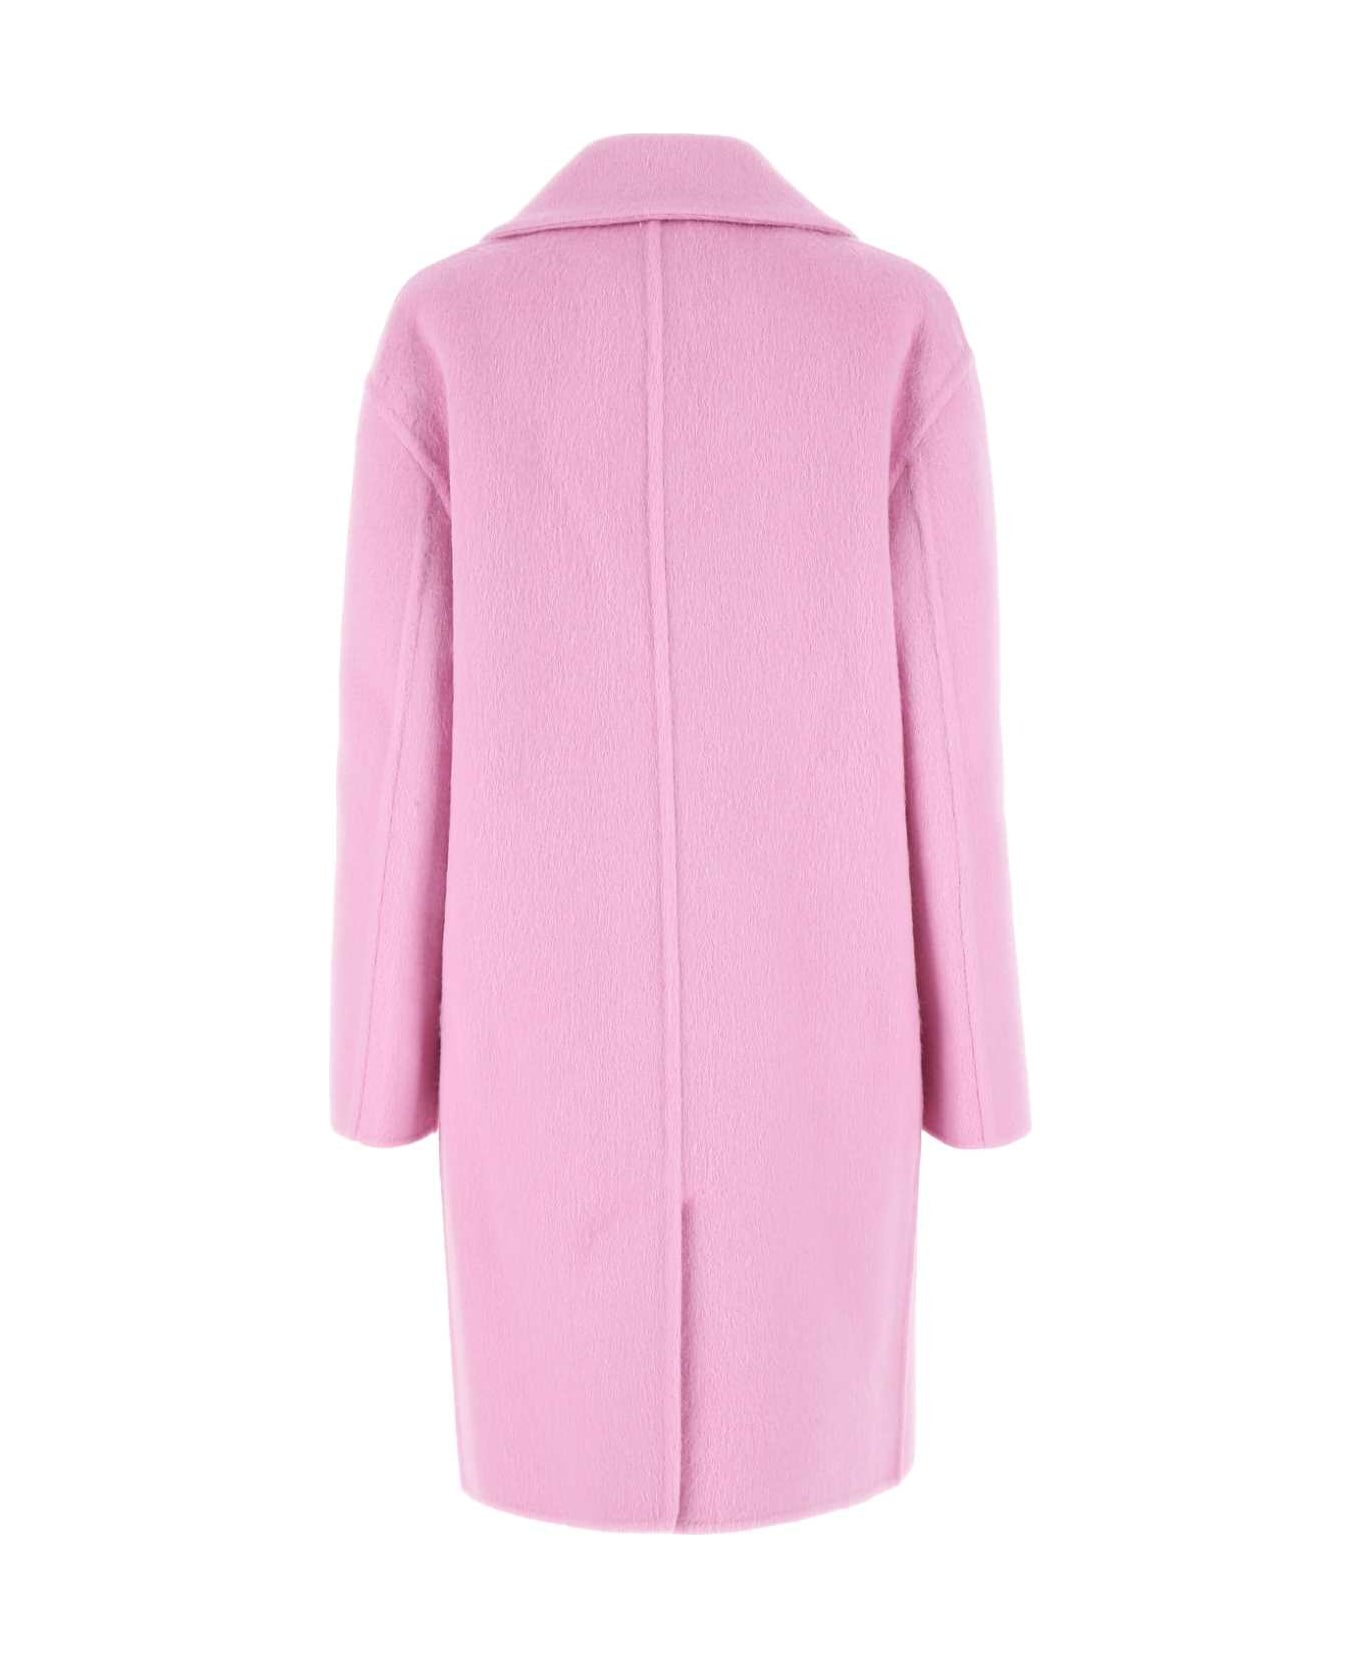 Bottega Veneta Pink Wool Blend Coat - 5600